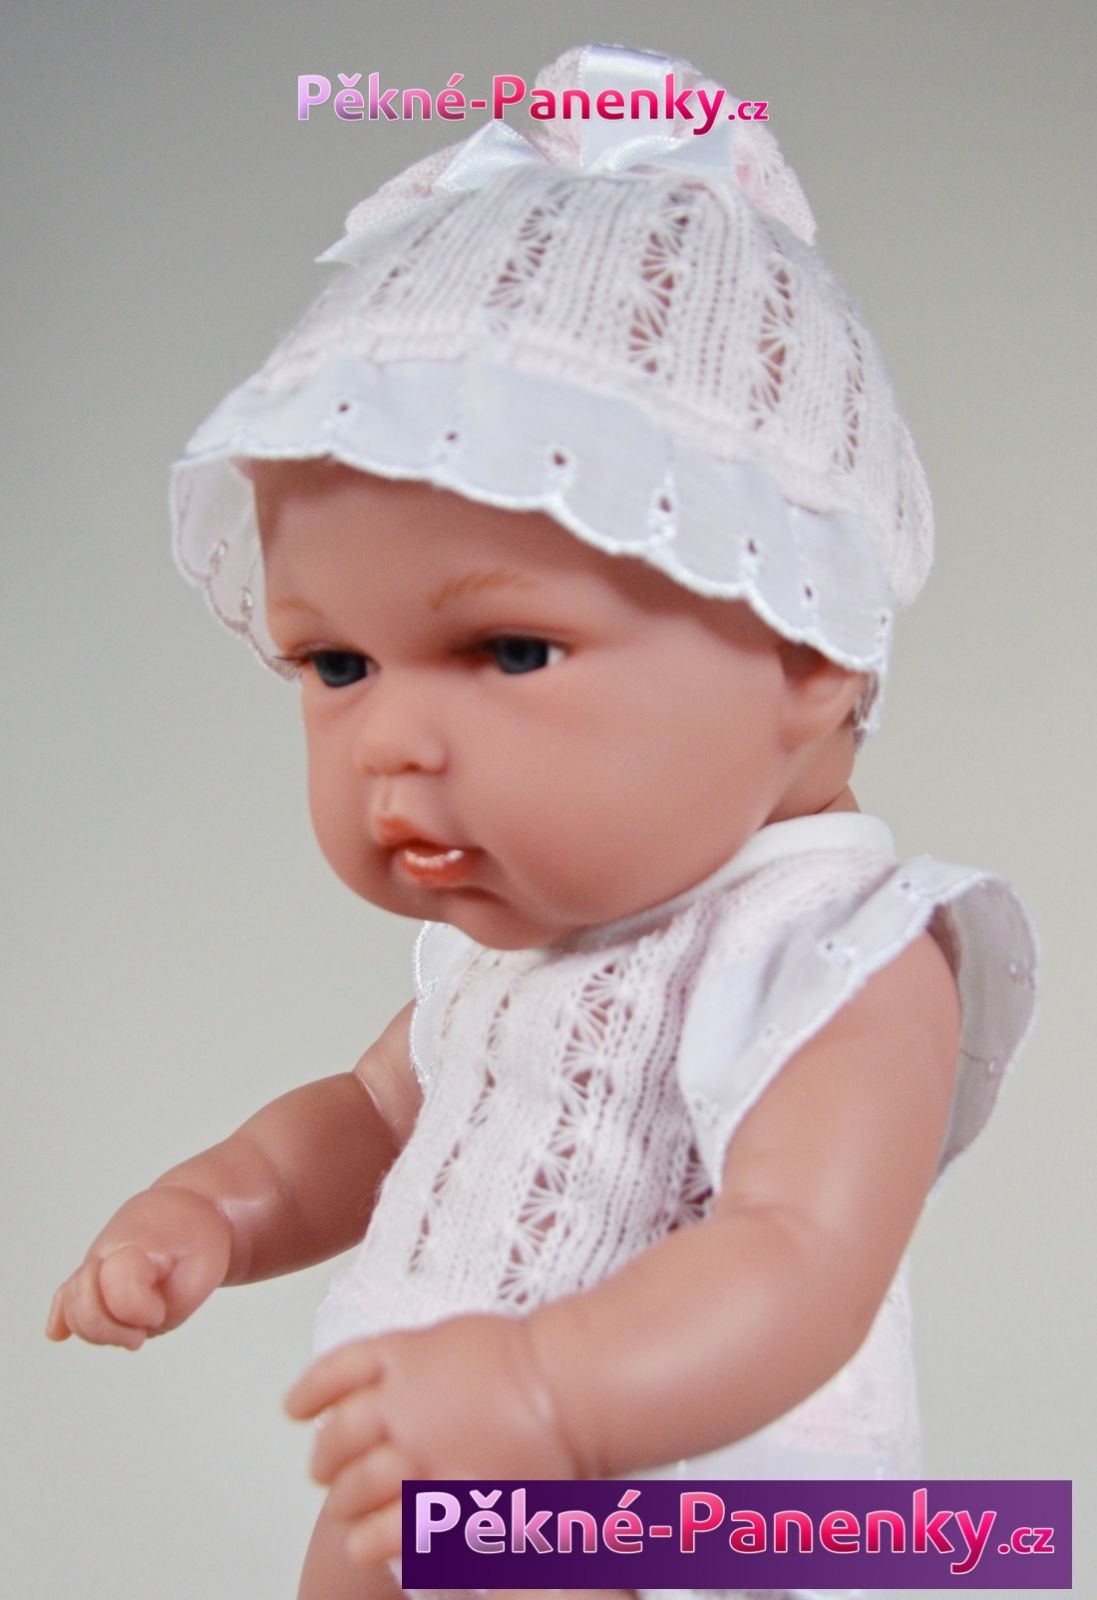 originalní španělské panenky pro děti realistická panenka jako miminko, španělské panenky Arias mluvící panenky ze Španělska pro děti